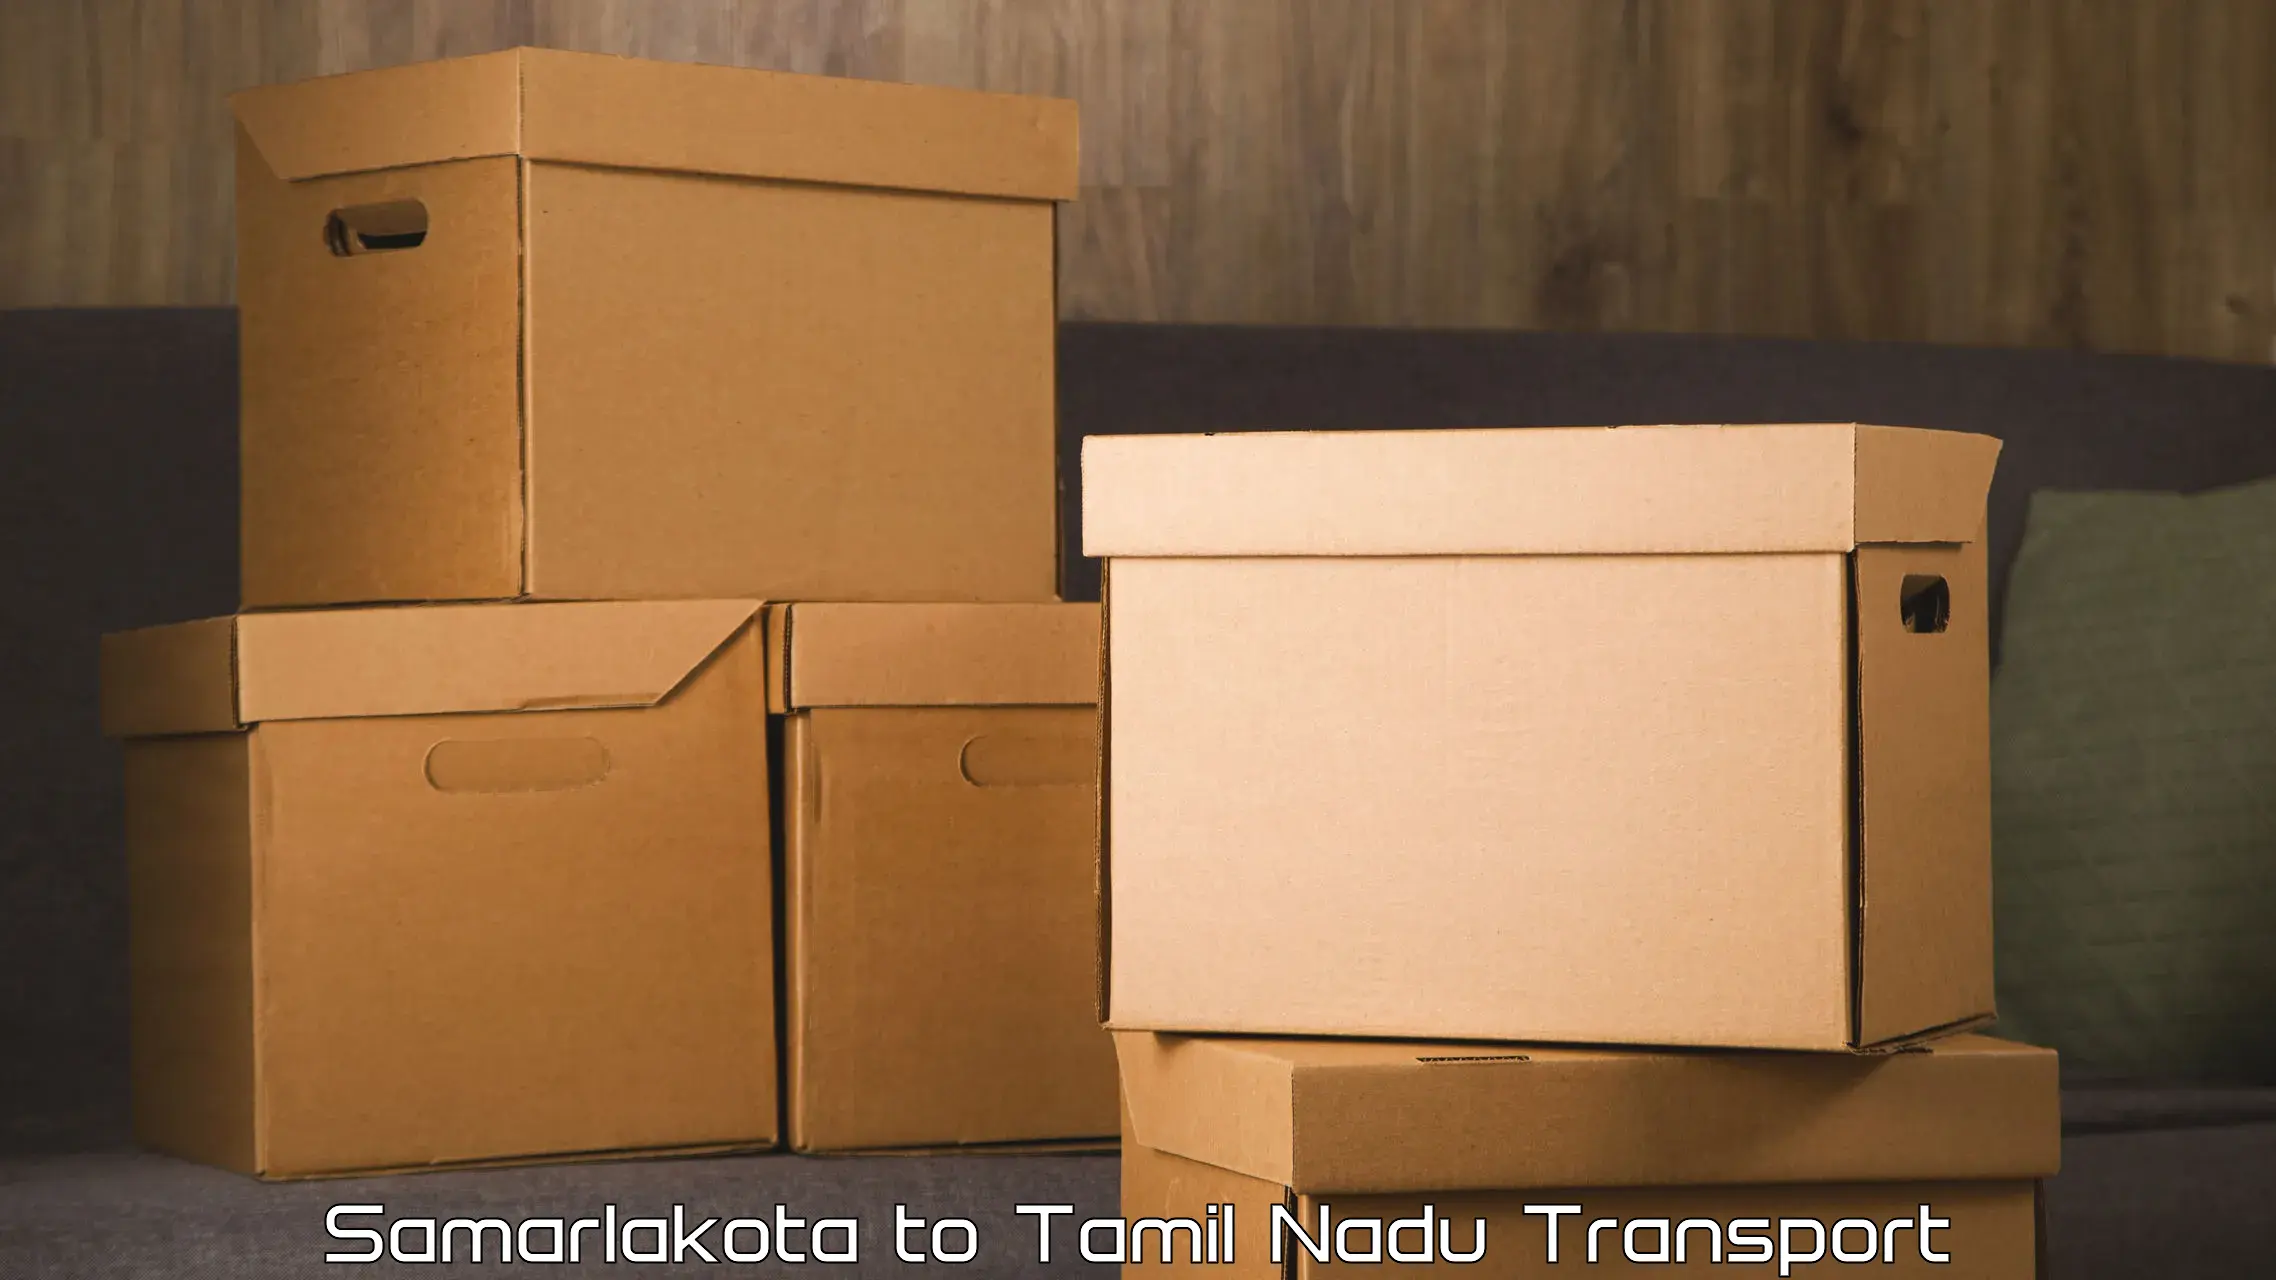 Cargo train transport services Samarlakota to IIIT Tiruchirappalli